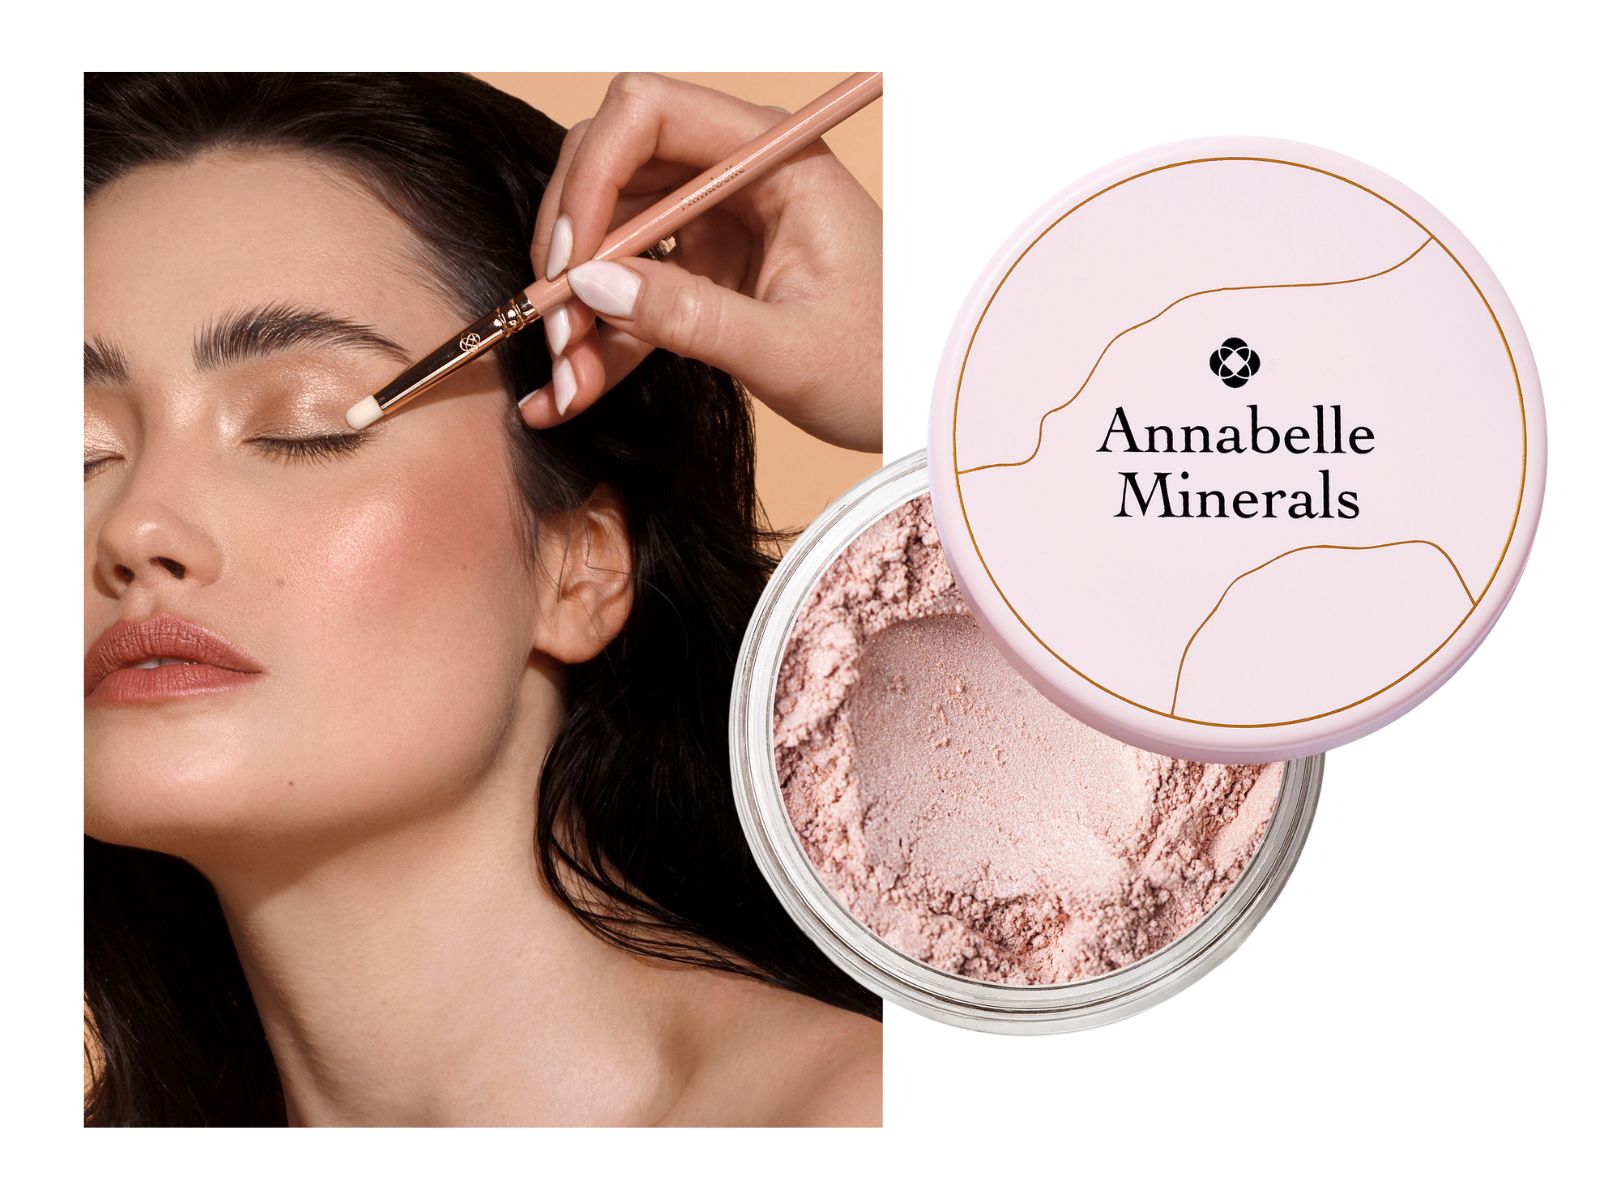 Najlepsze kosmetyki naturalne na lato: rozświetlacz mineralny w kolorze Diamond Glow Annabelle Minerals